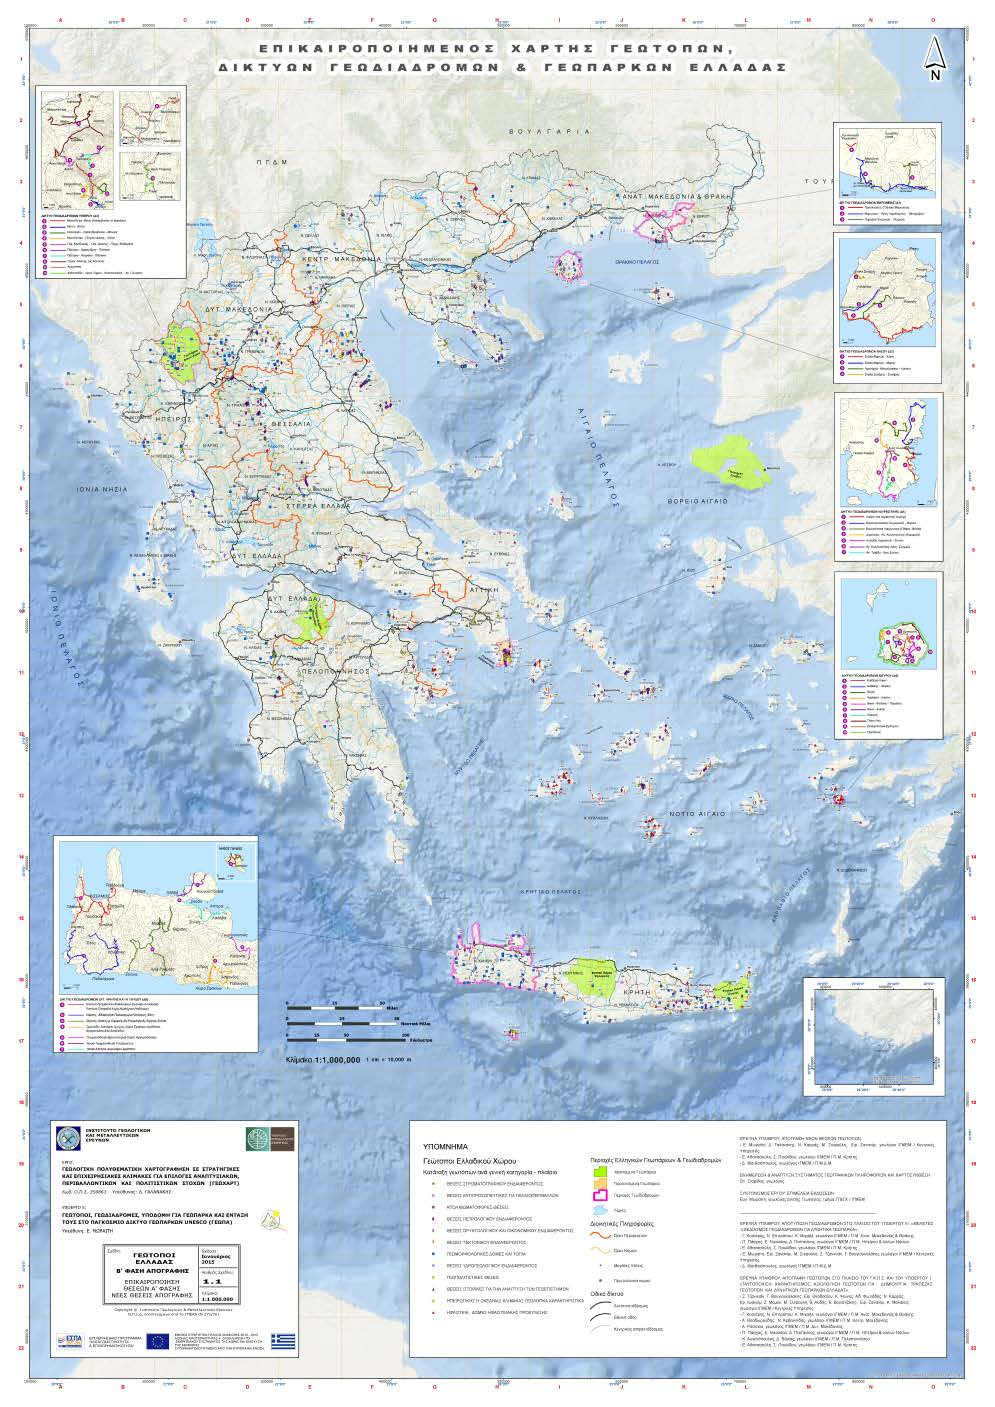 ΓΕΩΤΟΠΟΙ - ΓΕΩΠΑΡΚΑ Επικαιροποιημένος Χάρτης Γεωτόπων, Γεωδιαδρομών και Γεωπάρκων Ελλάδας (1:1.000.